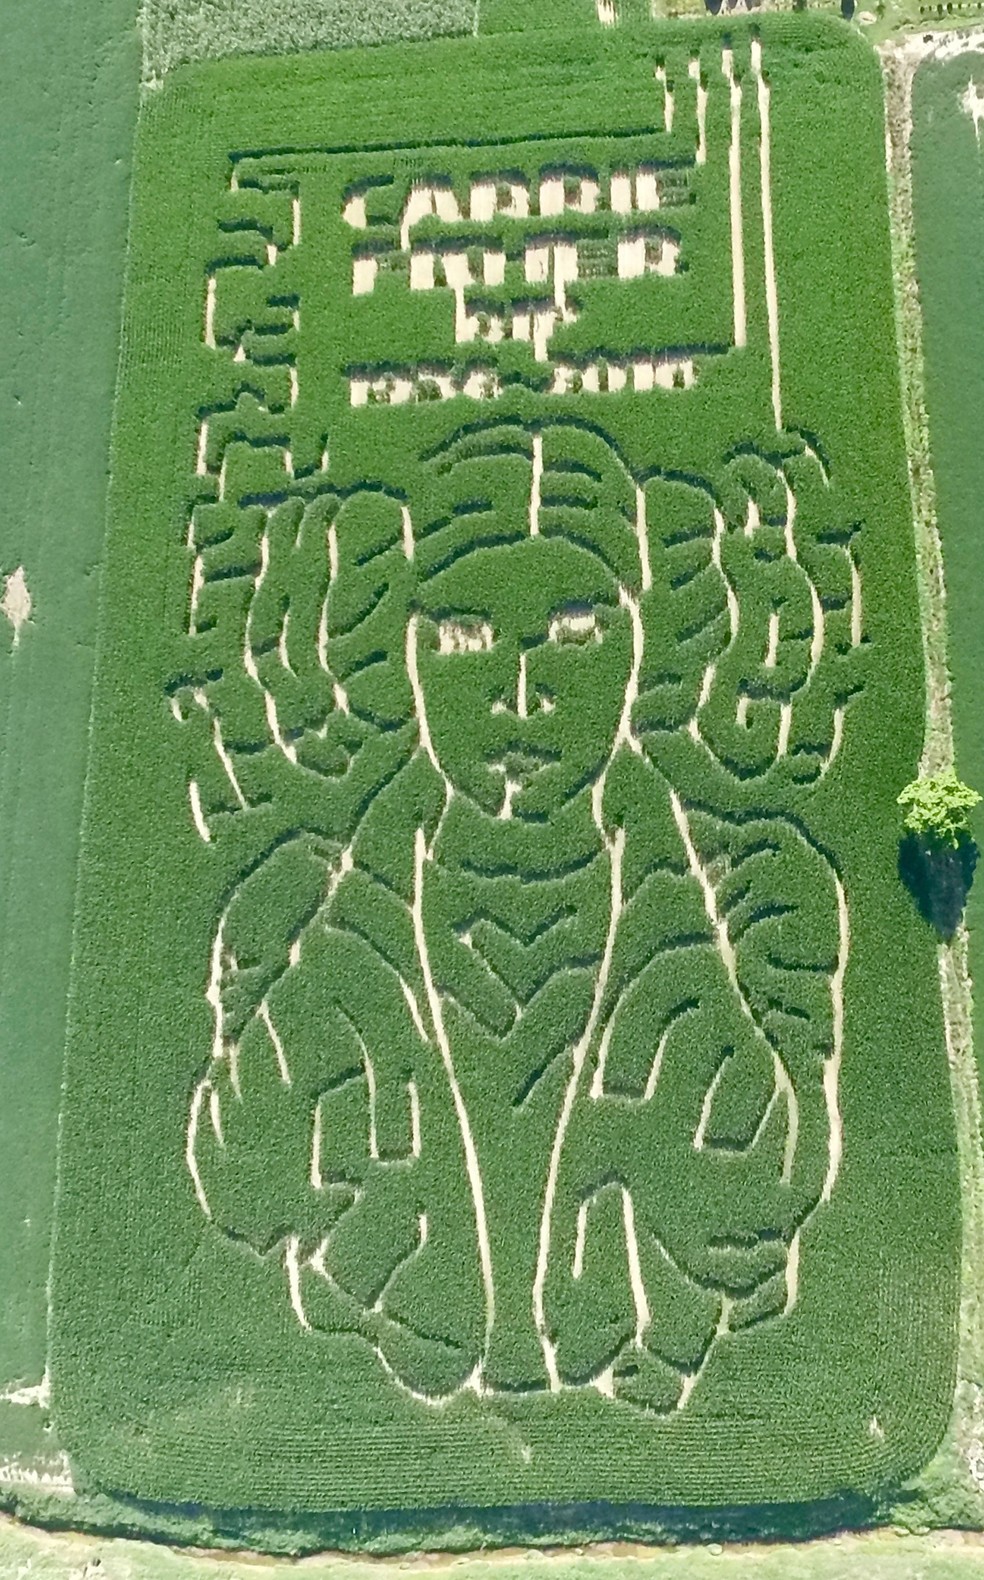 Fazendeiro faz labirinto de milho em homenagem à atriz Carrie Fisher, de 'Star Wars' (Foto: Jeremy Goebel via AP)